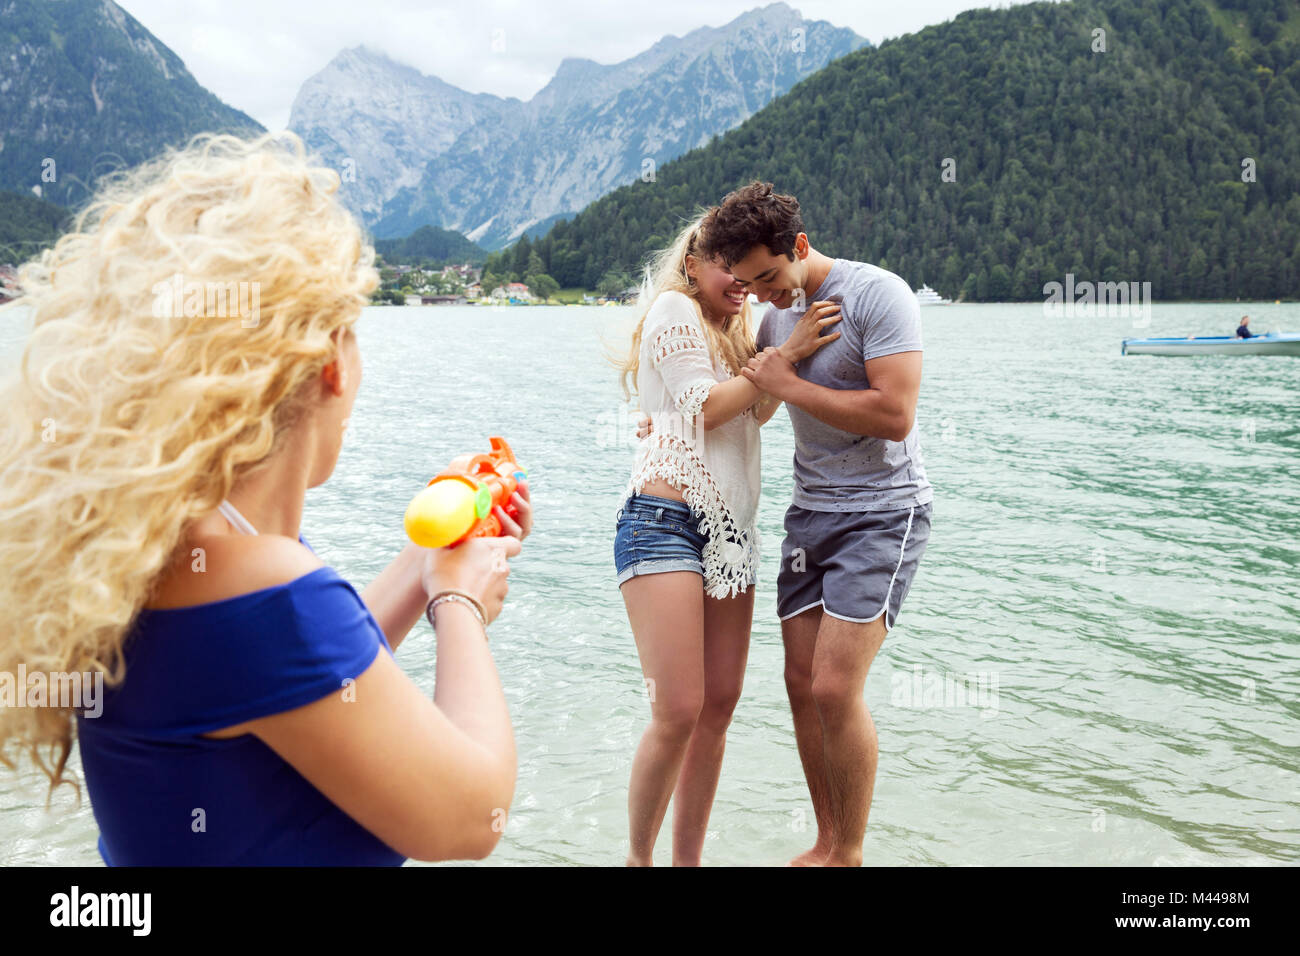 Woman squirting pistolet à eau à amis, Innsbruck, Tyrol, Autriche, Europe Banque D'Images